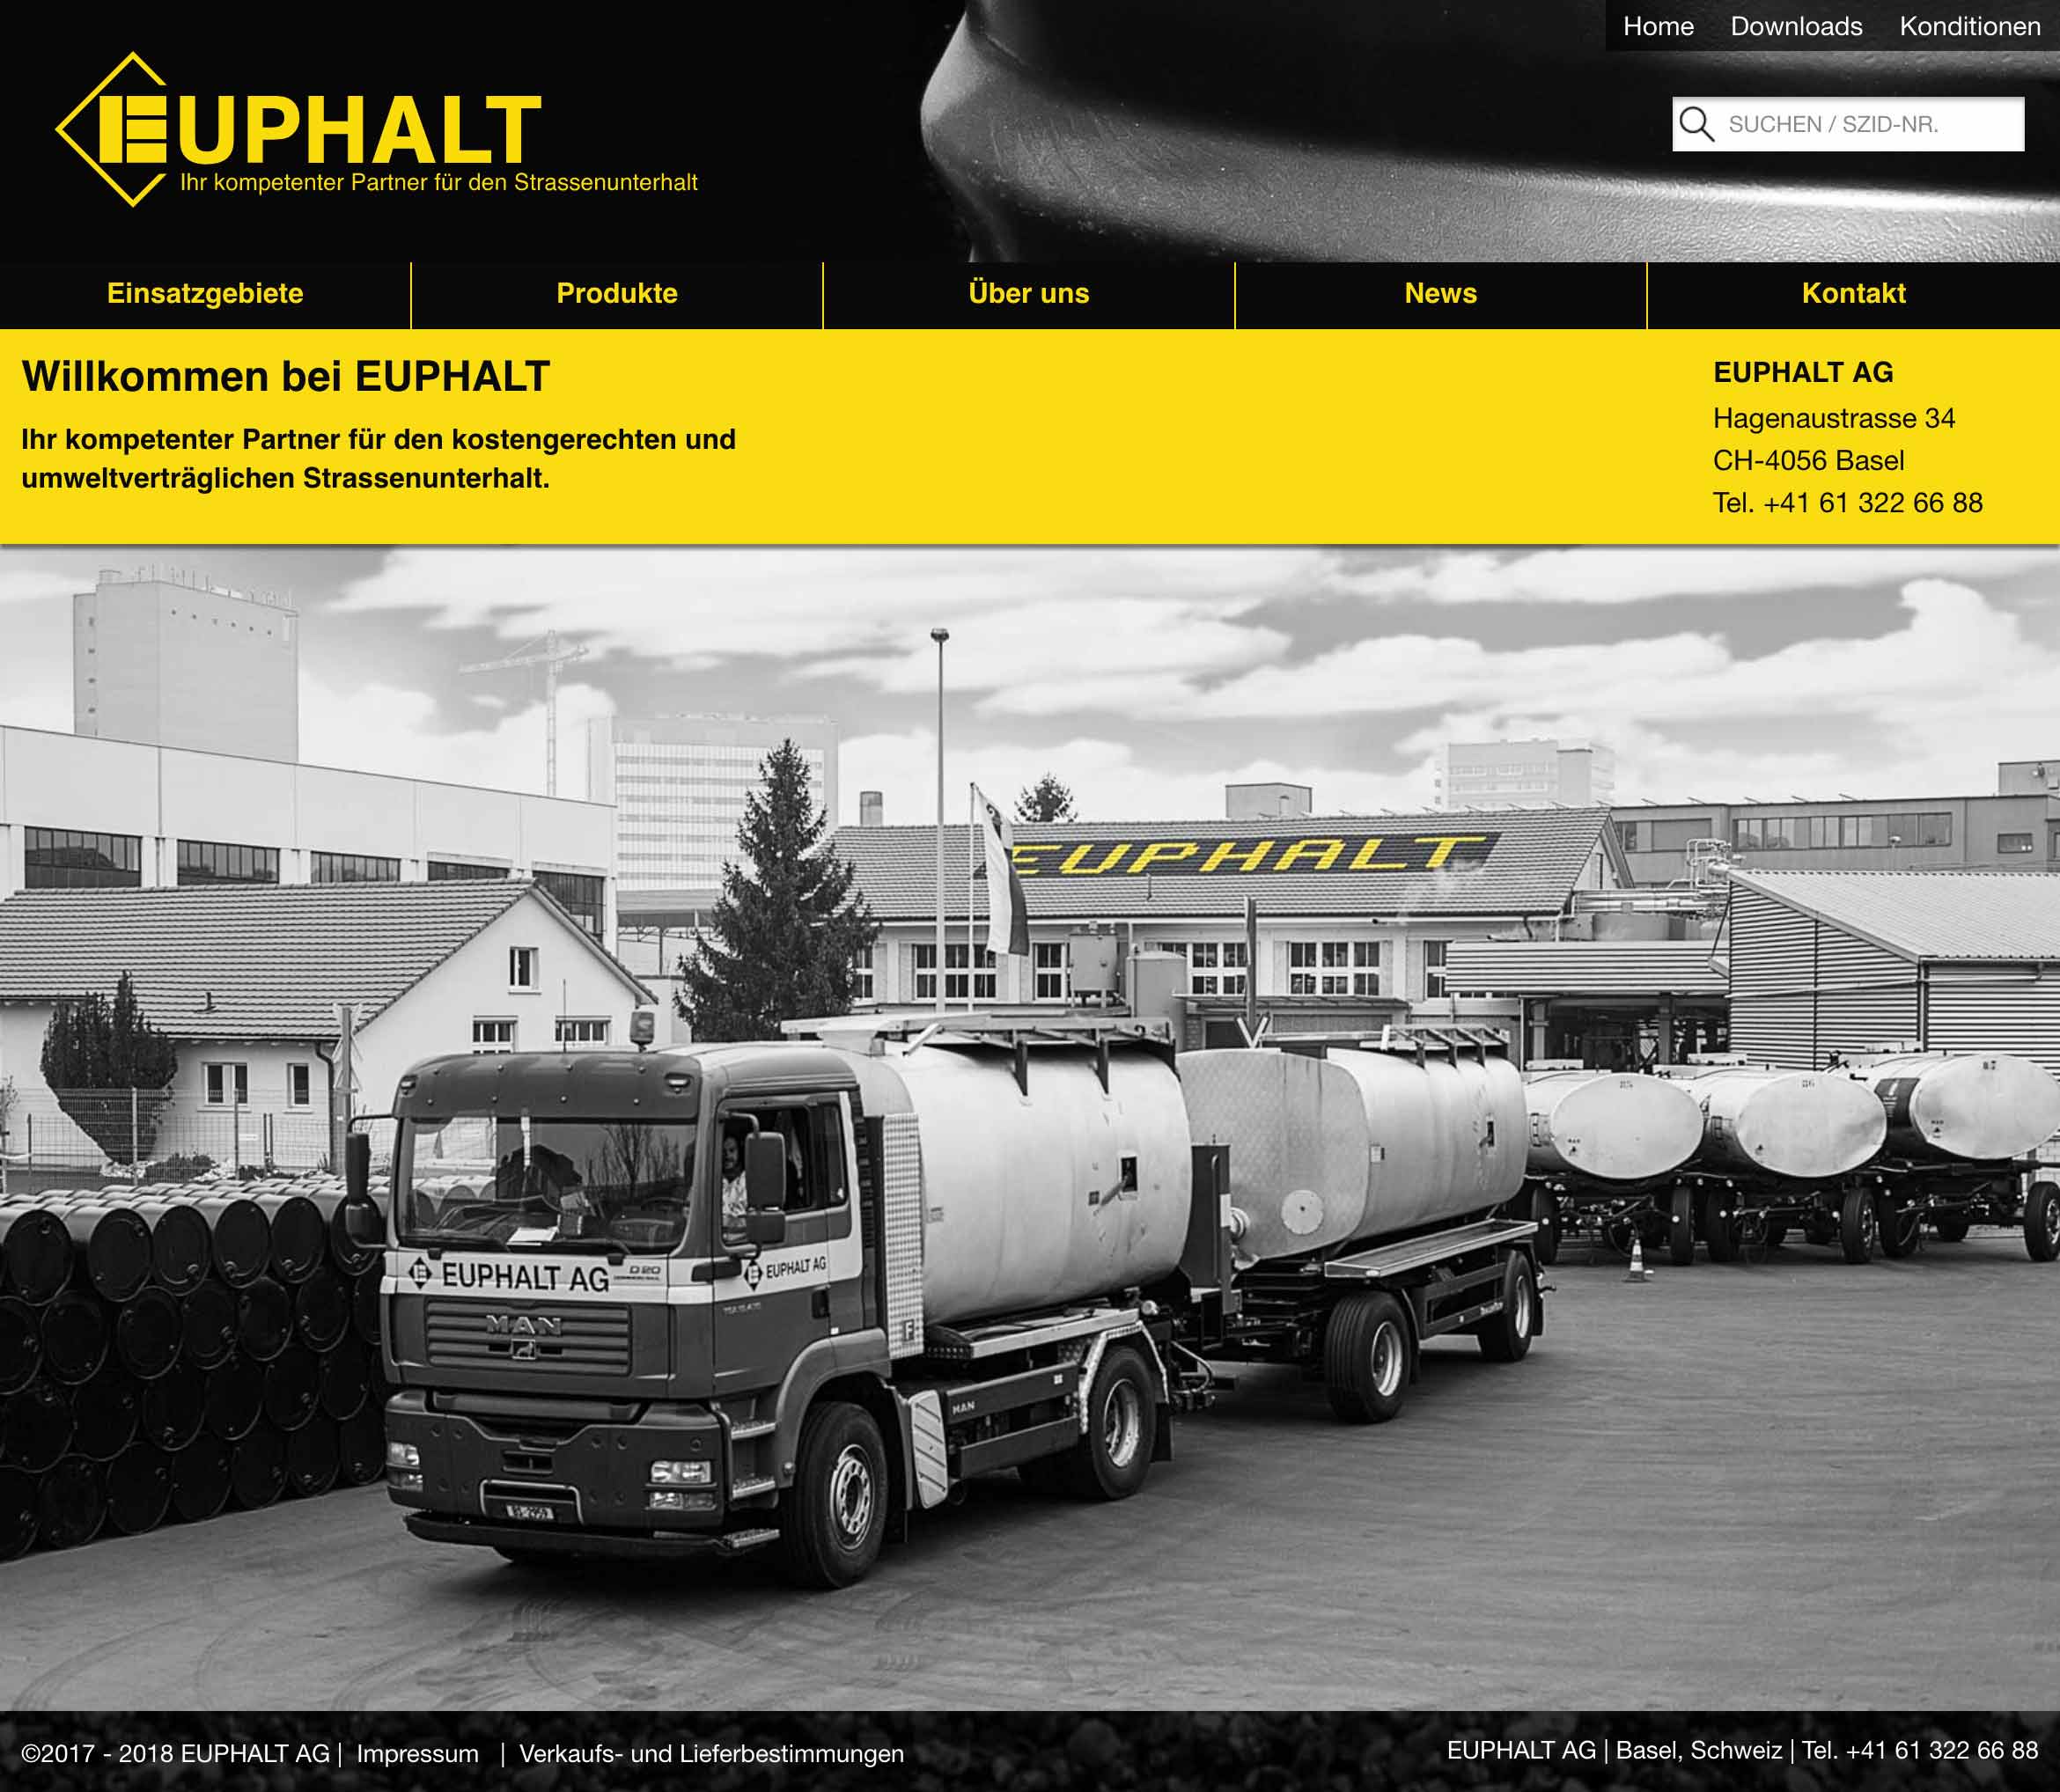 Euphalt AG (Homepage)